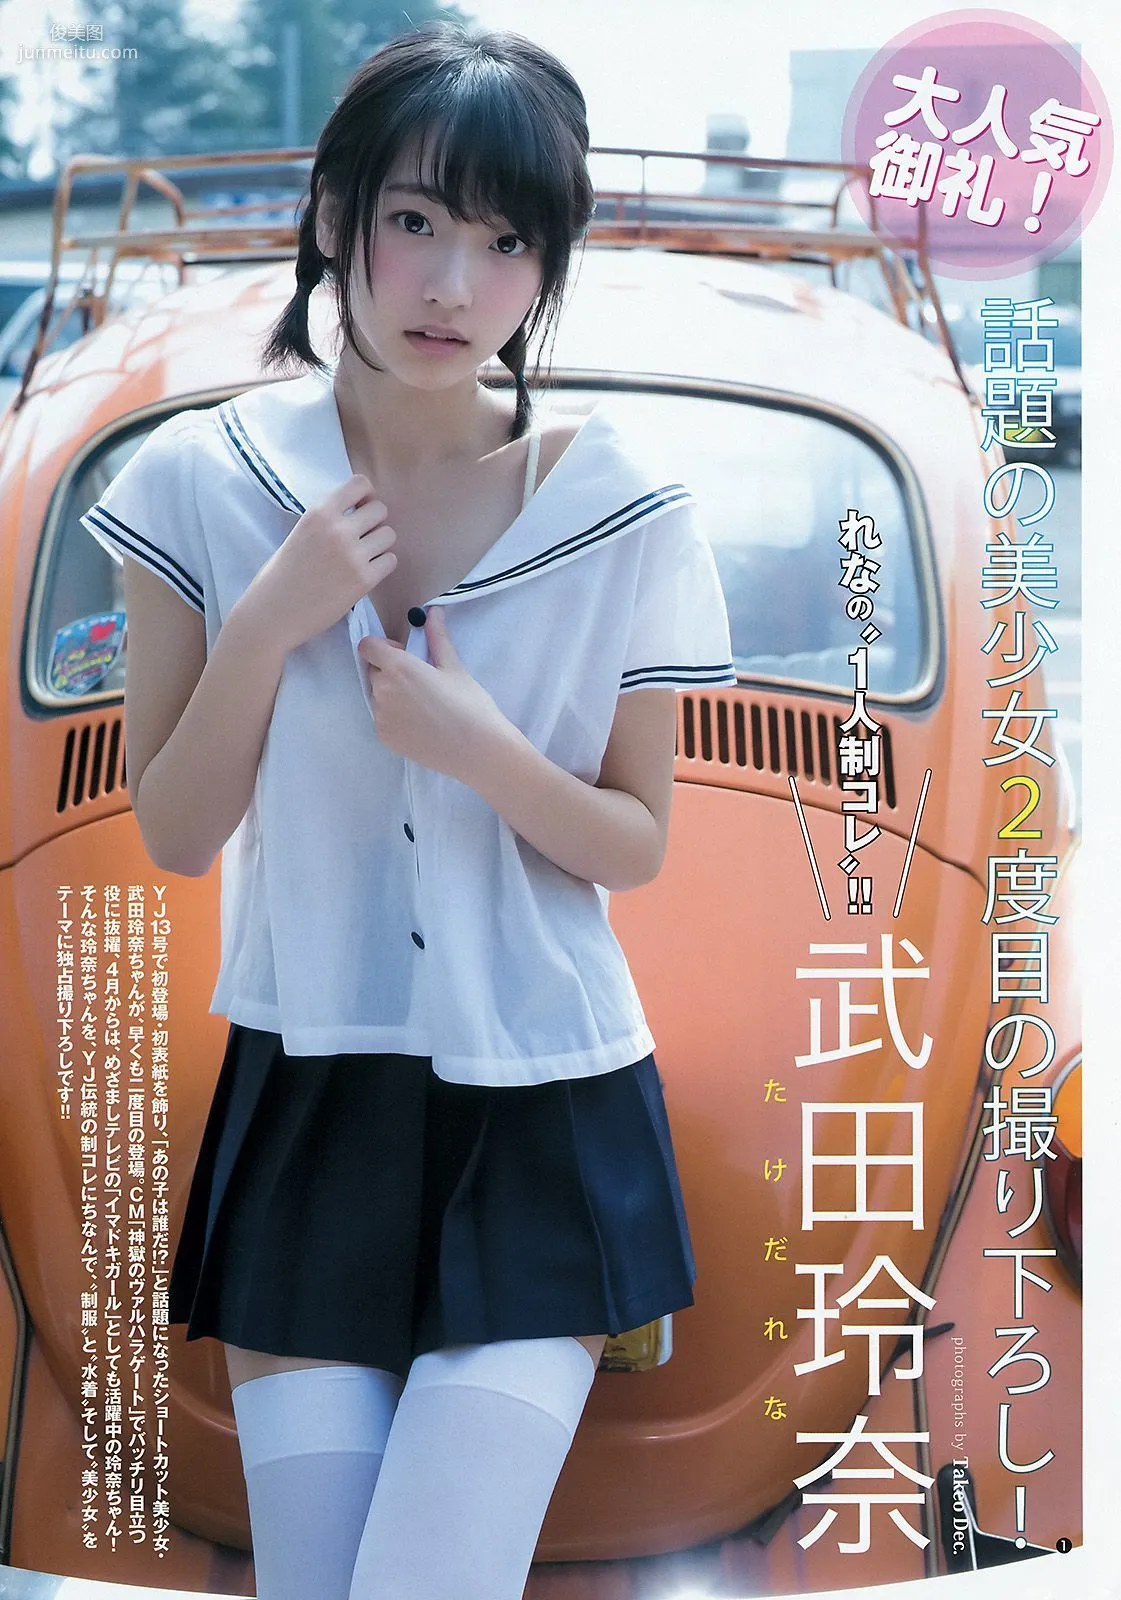 内田真礼 武田玲奈 しらたまくん [Weekly Young Jump] 2015年No.20 写真杂志9